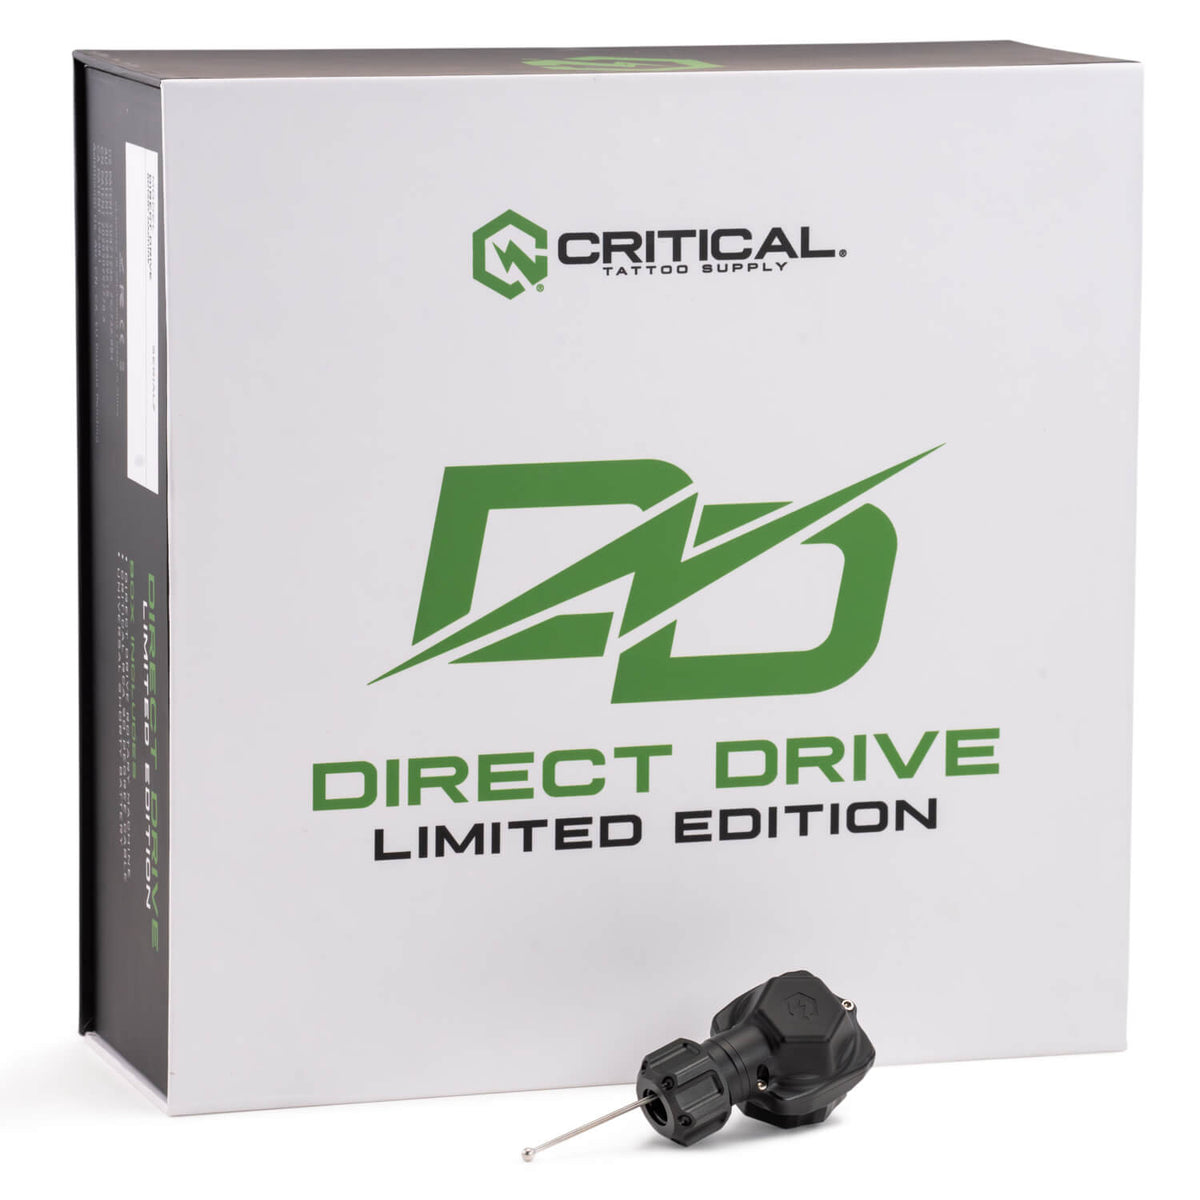 TATSoul x Critical Direct Drive Rotary Machine Bundle